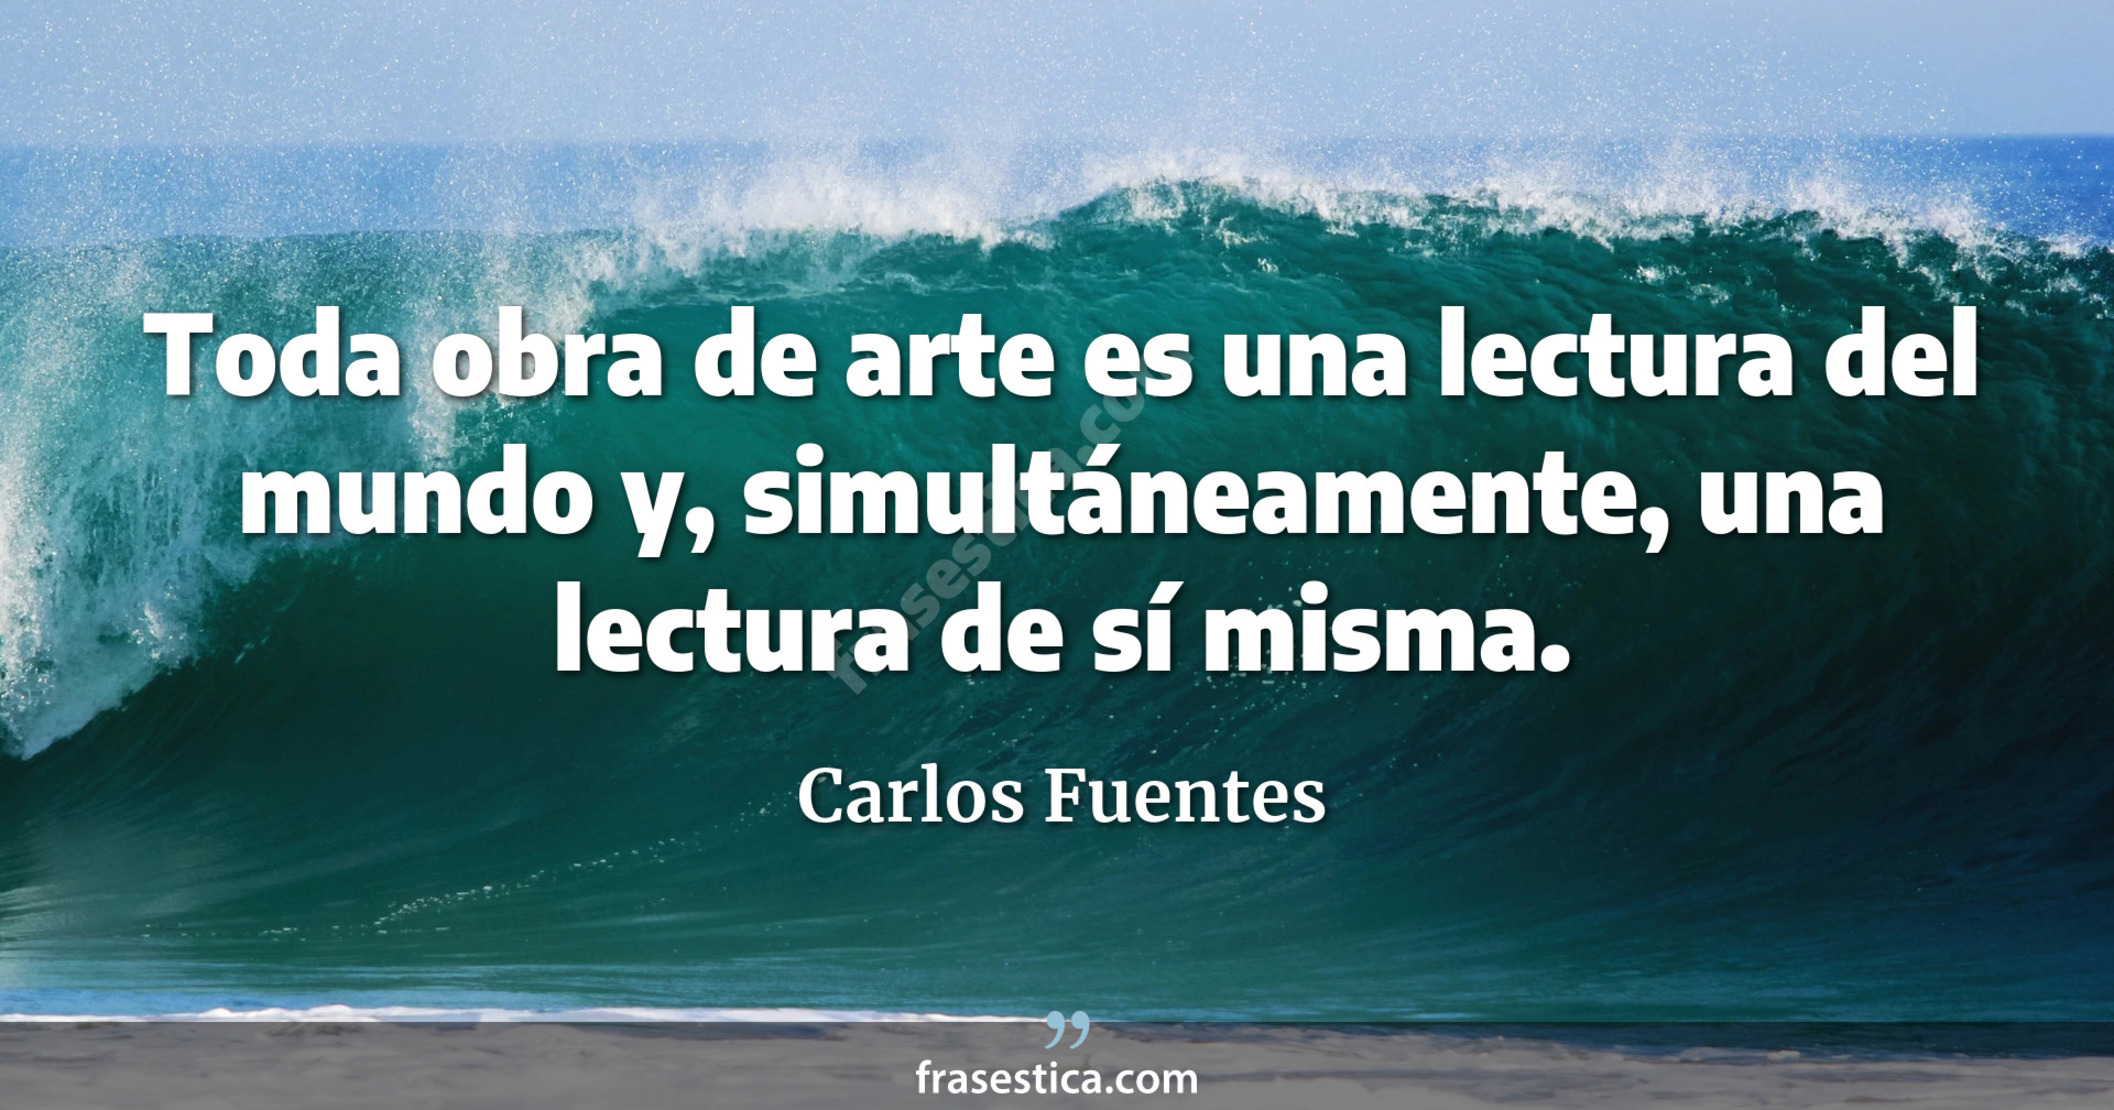 Toda obra de arte es una lectura del mundo y, simultáneamente, una lectura de sí misma. - Carlos Fuentes